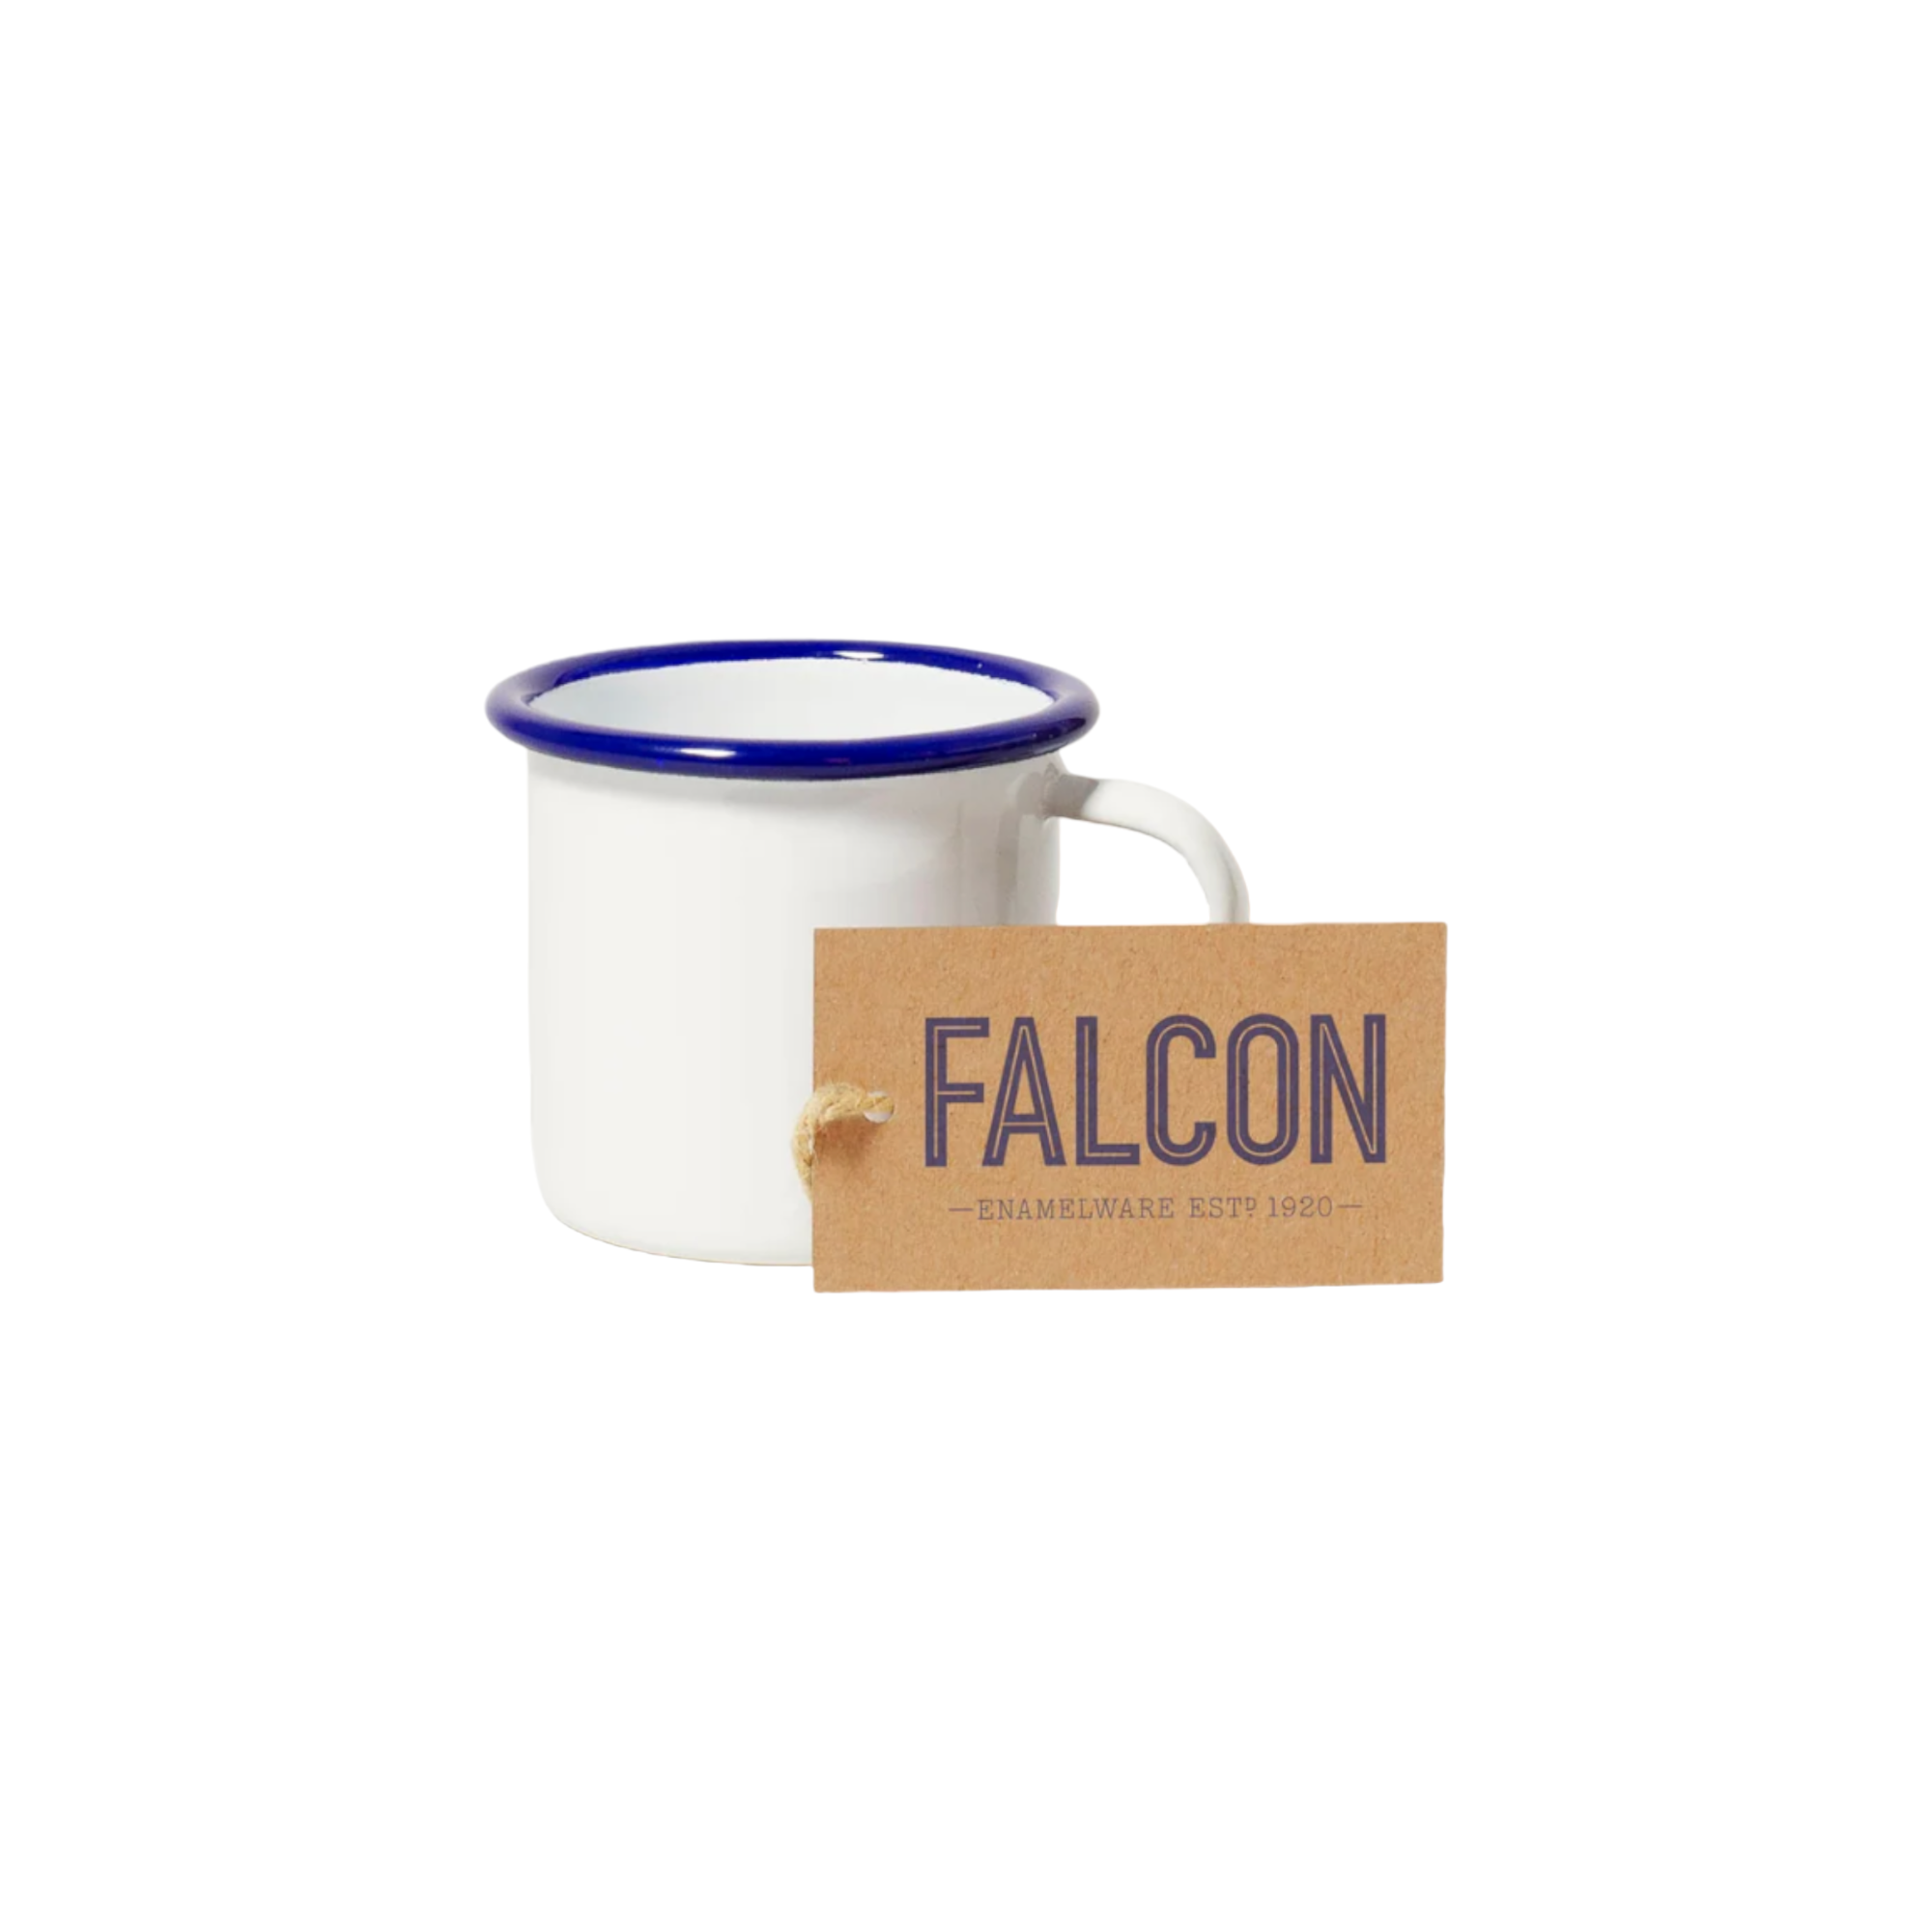 Falcon - 琺瑯Espresso咖啡杯 - White with Blue rim